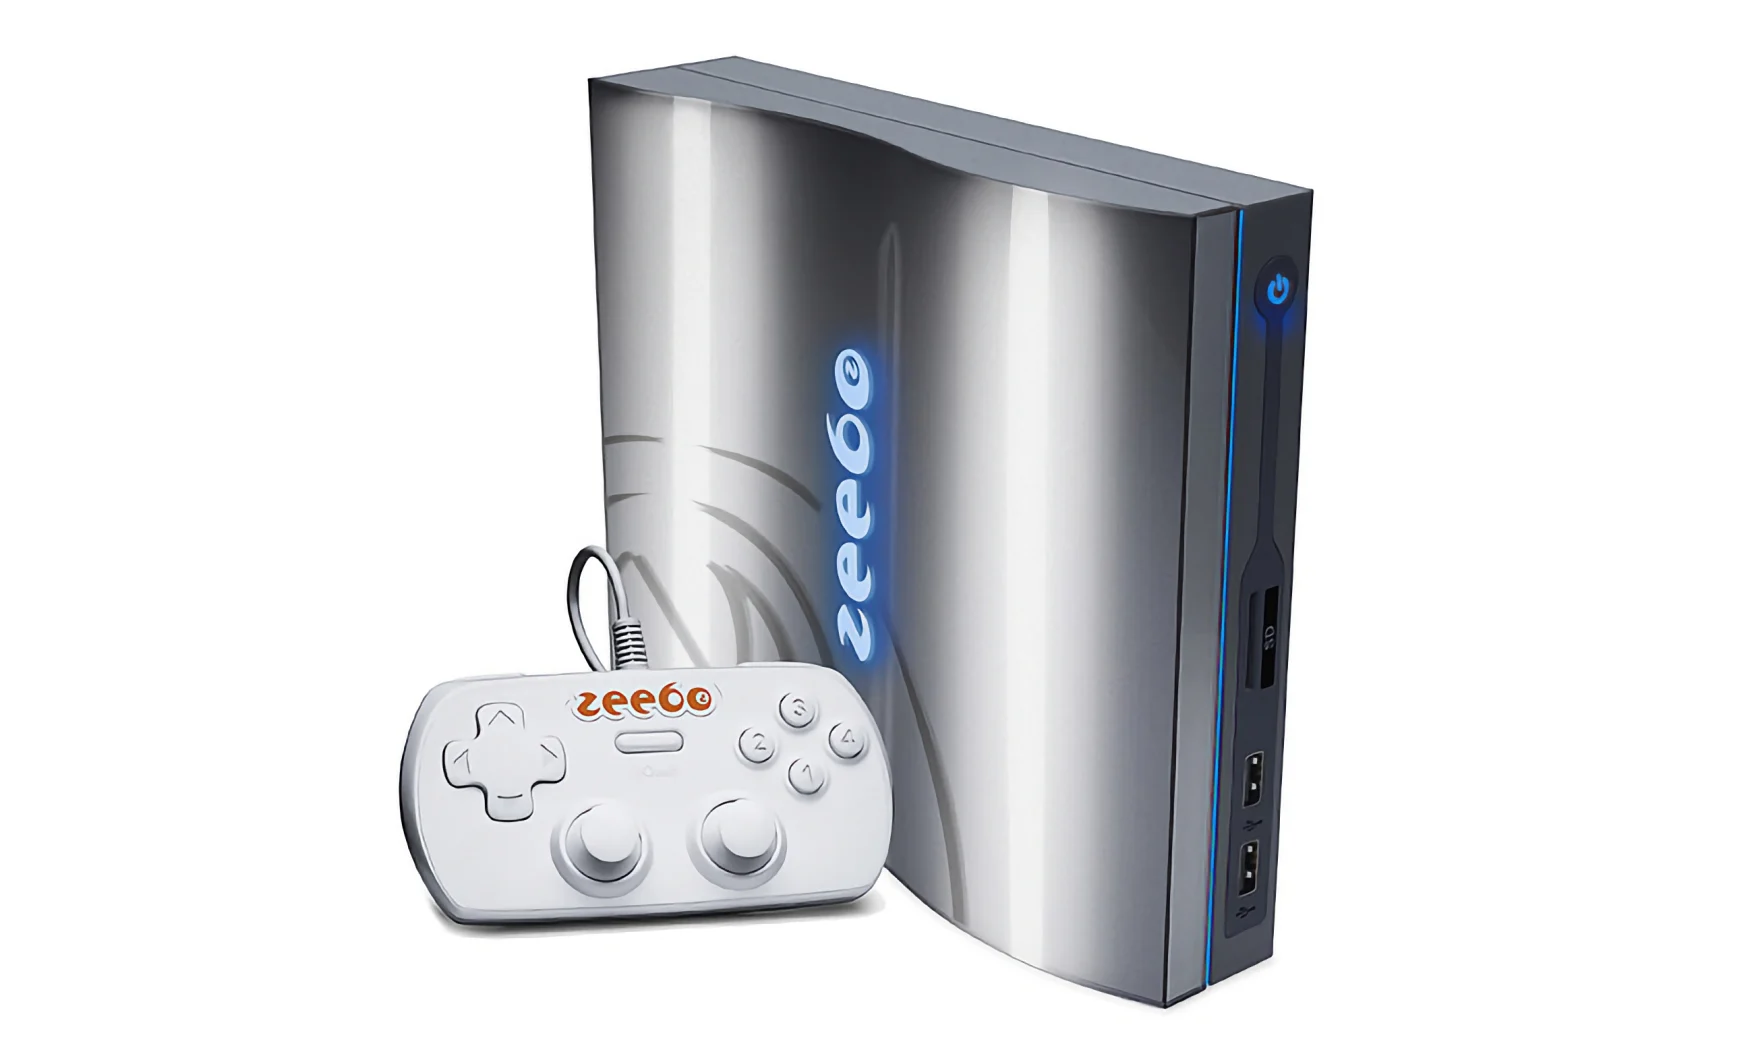 Archiviertes Marketingbild der Zeebo-Spielekonsole.  Die dunkelgraue Konsole hat Rundungen und ähnelt ein wenig einer PS3 Slim.  Sein Controller ist weiß und rechteckig mit einem Orange 